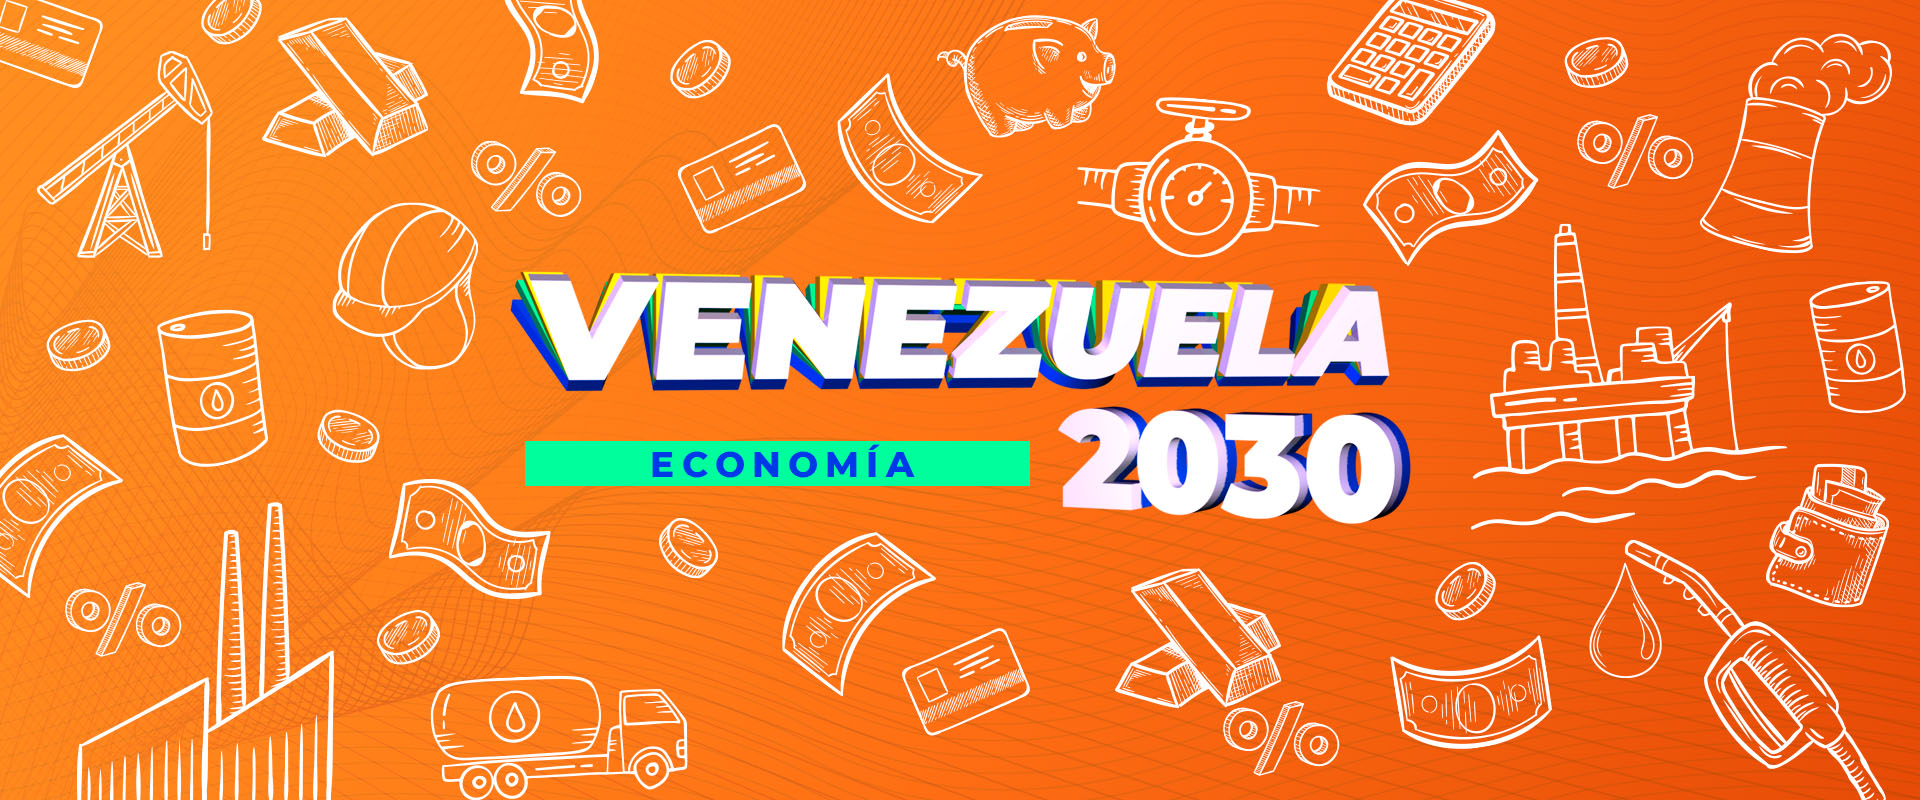 VZLA2030-Economia